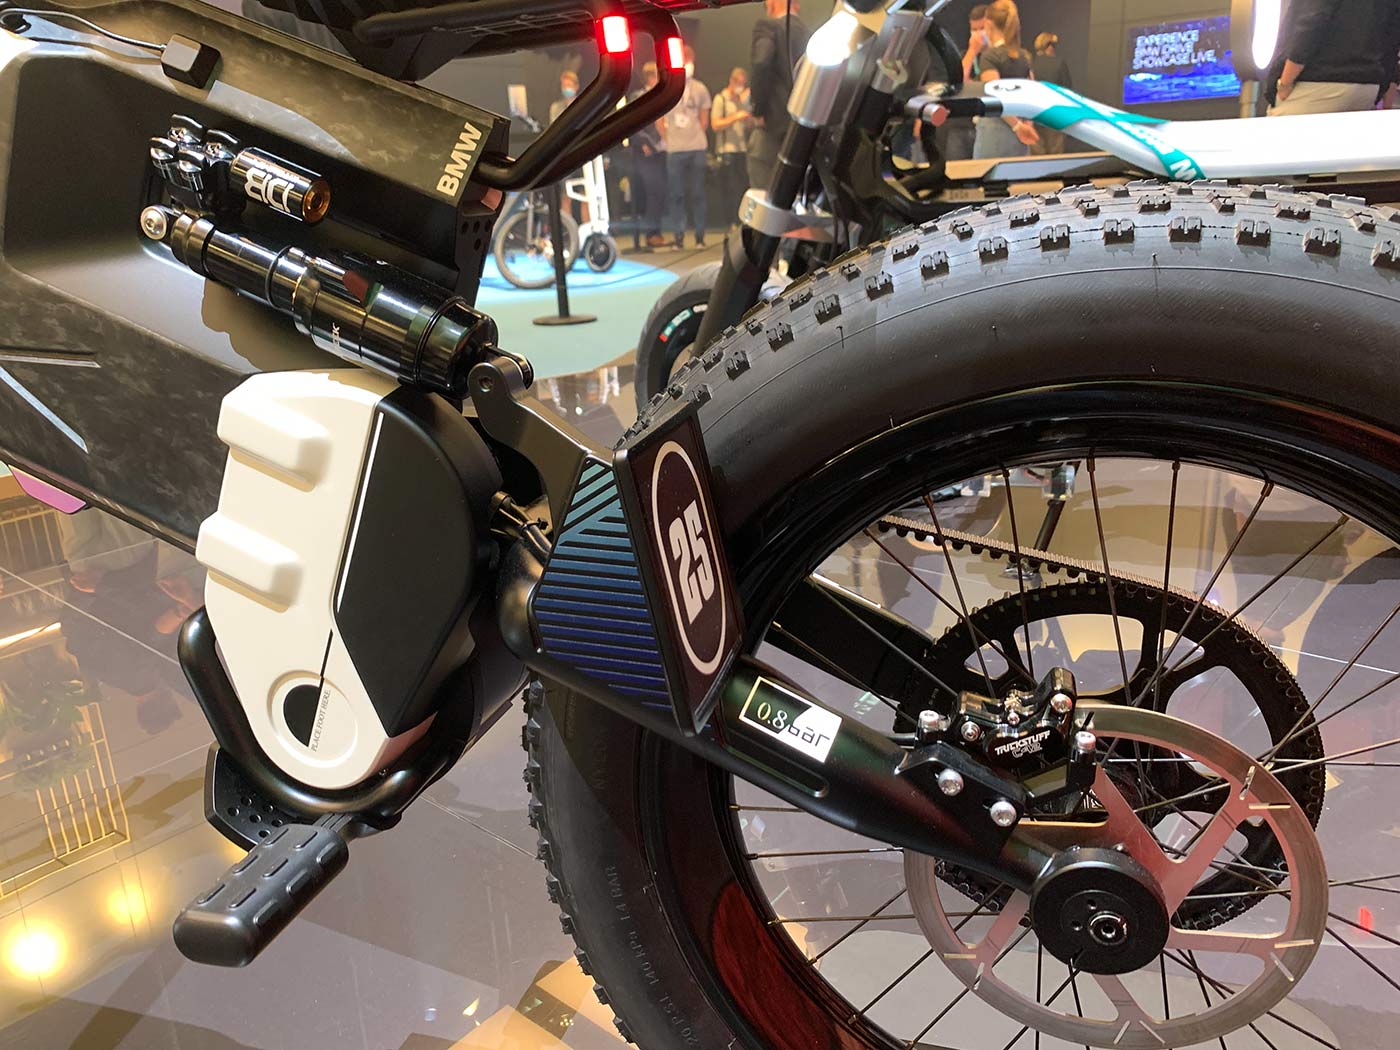 cane creek rear shock on BMW e-moto concept dirt bike